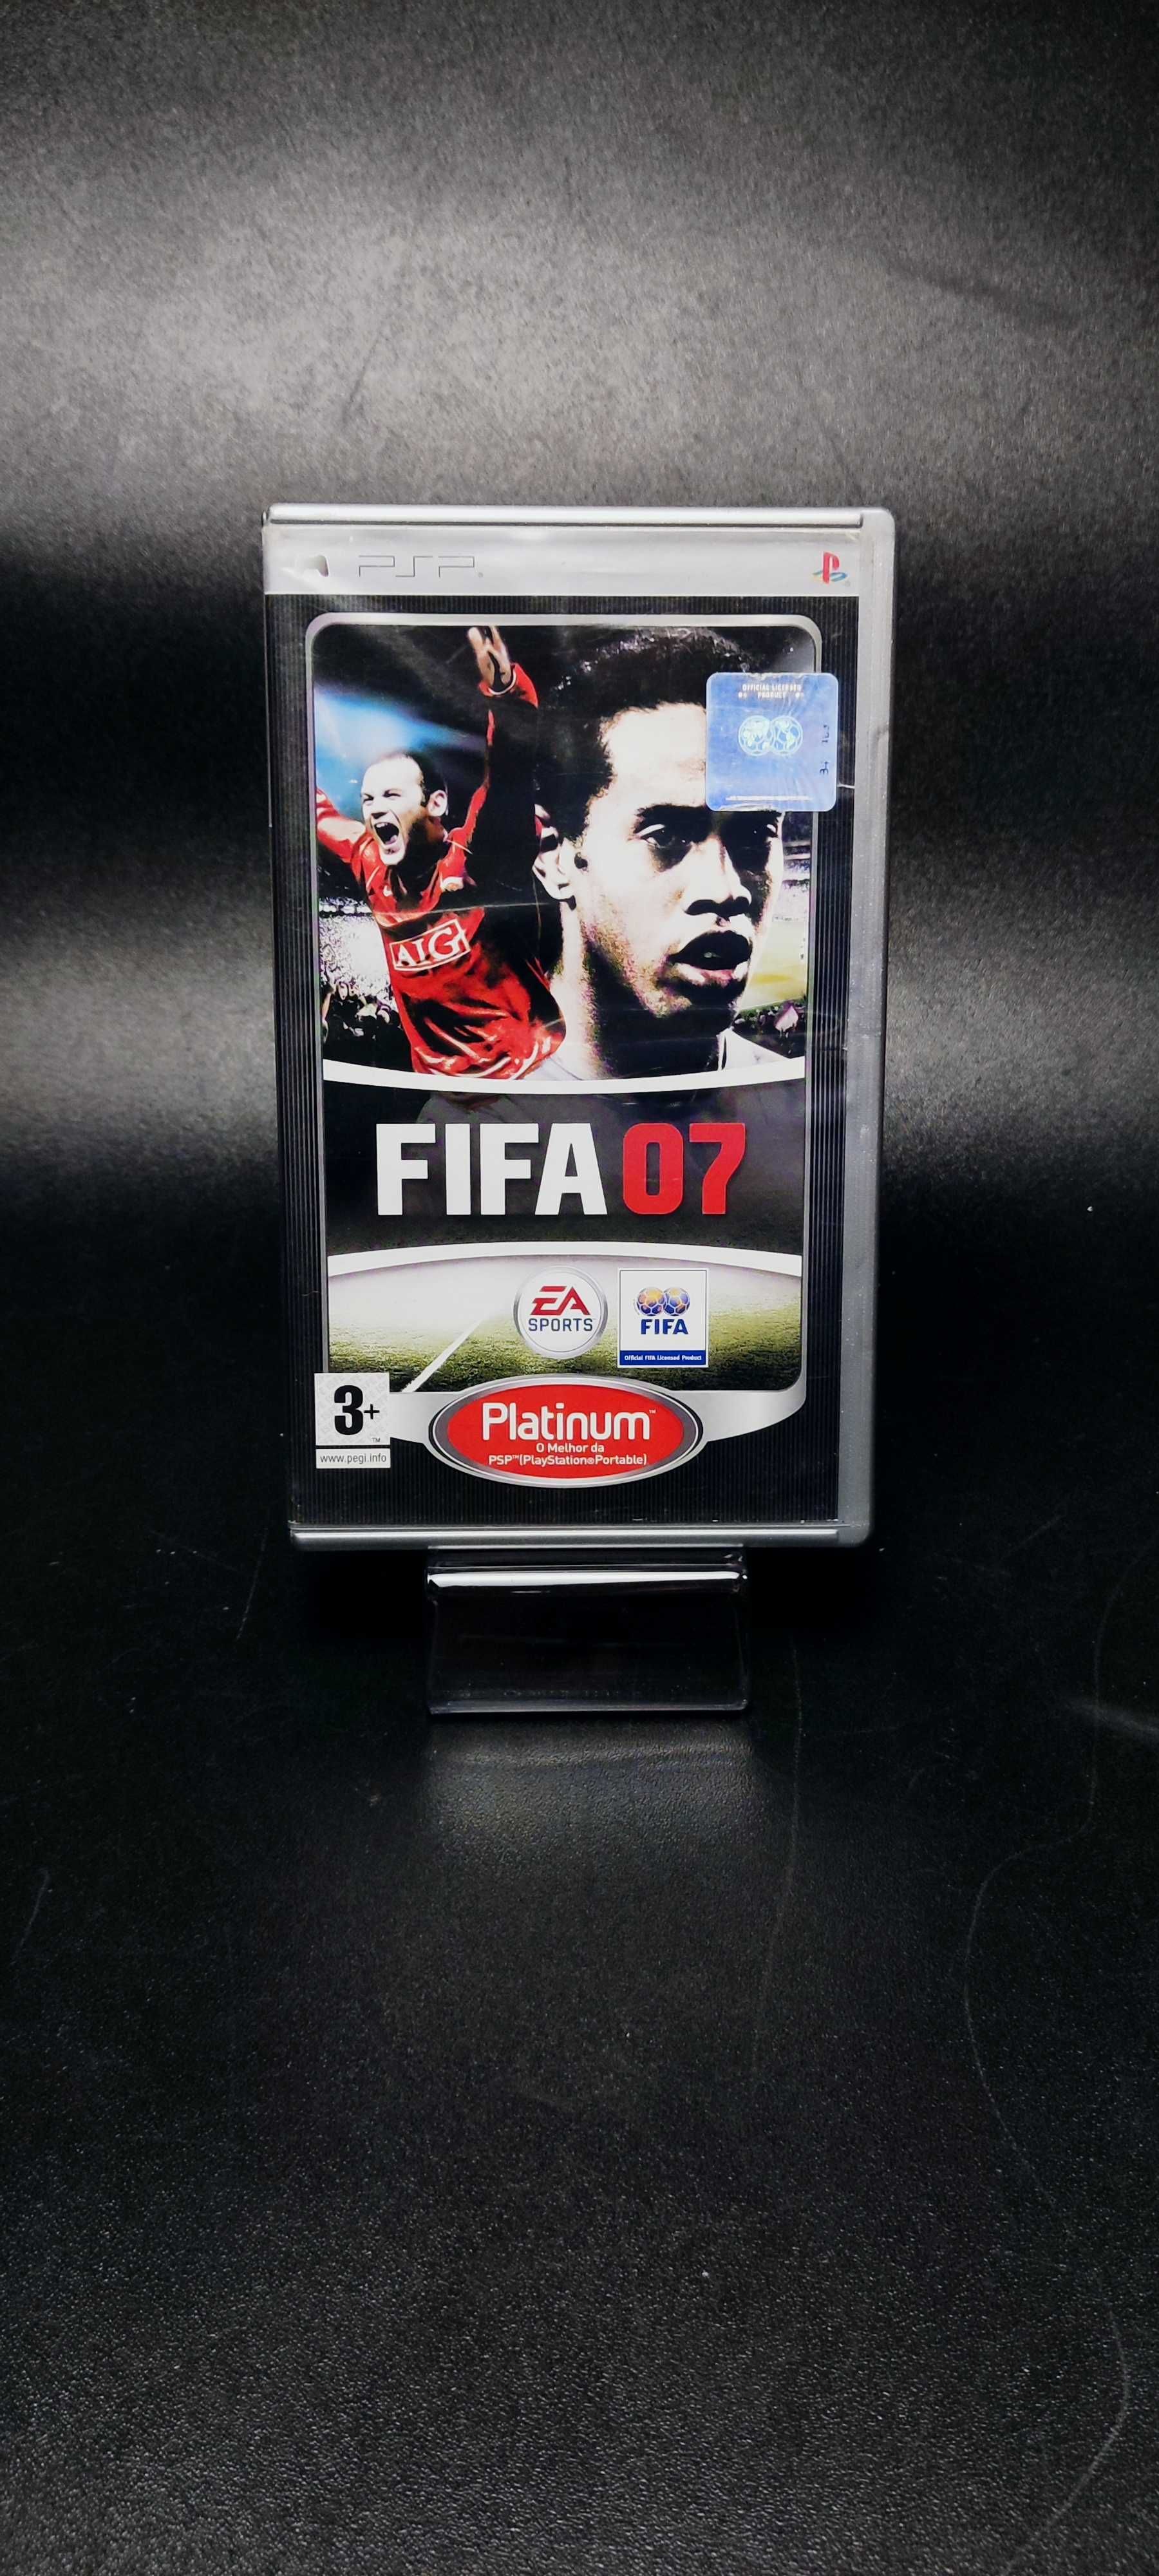 FIFA 07 - Playstation Portatil